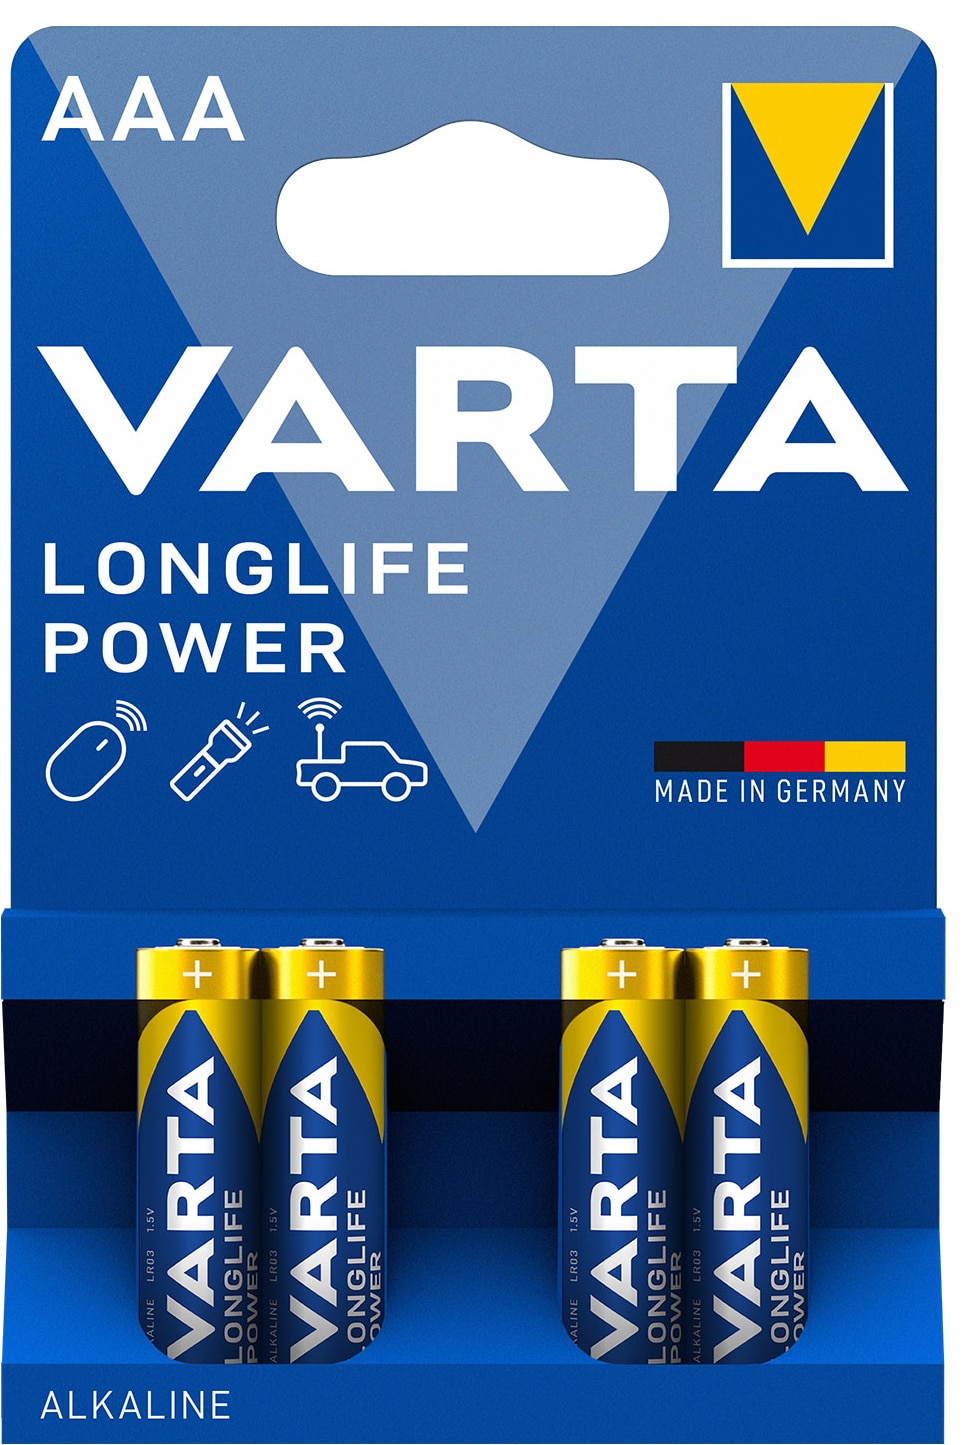 Billede af Varta Longlife Power AAA-batterier (4-pak) hos Elgiganten